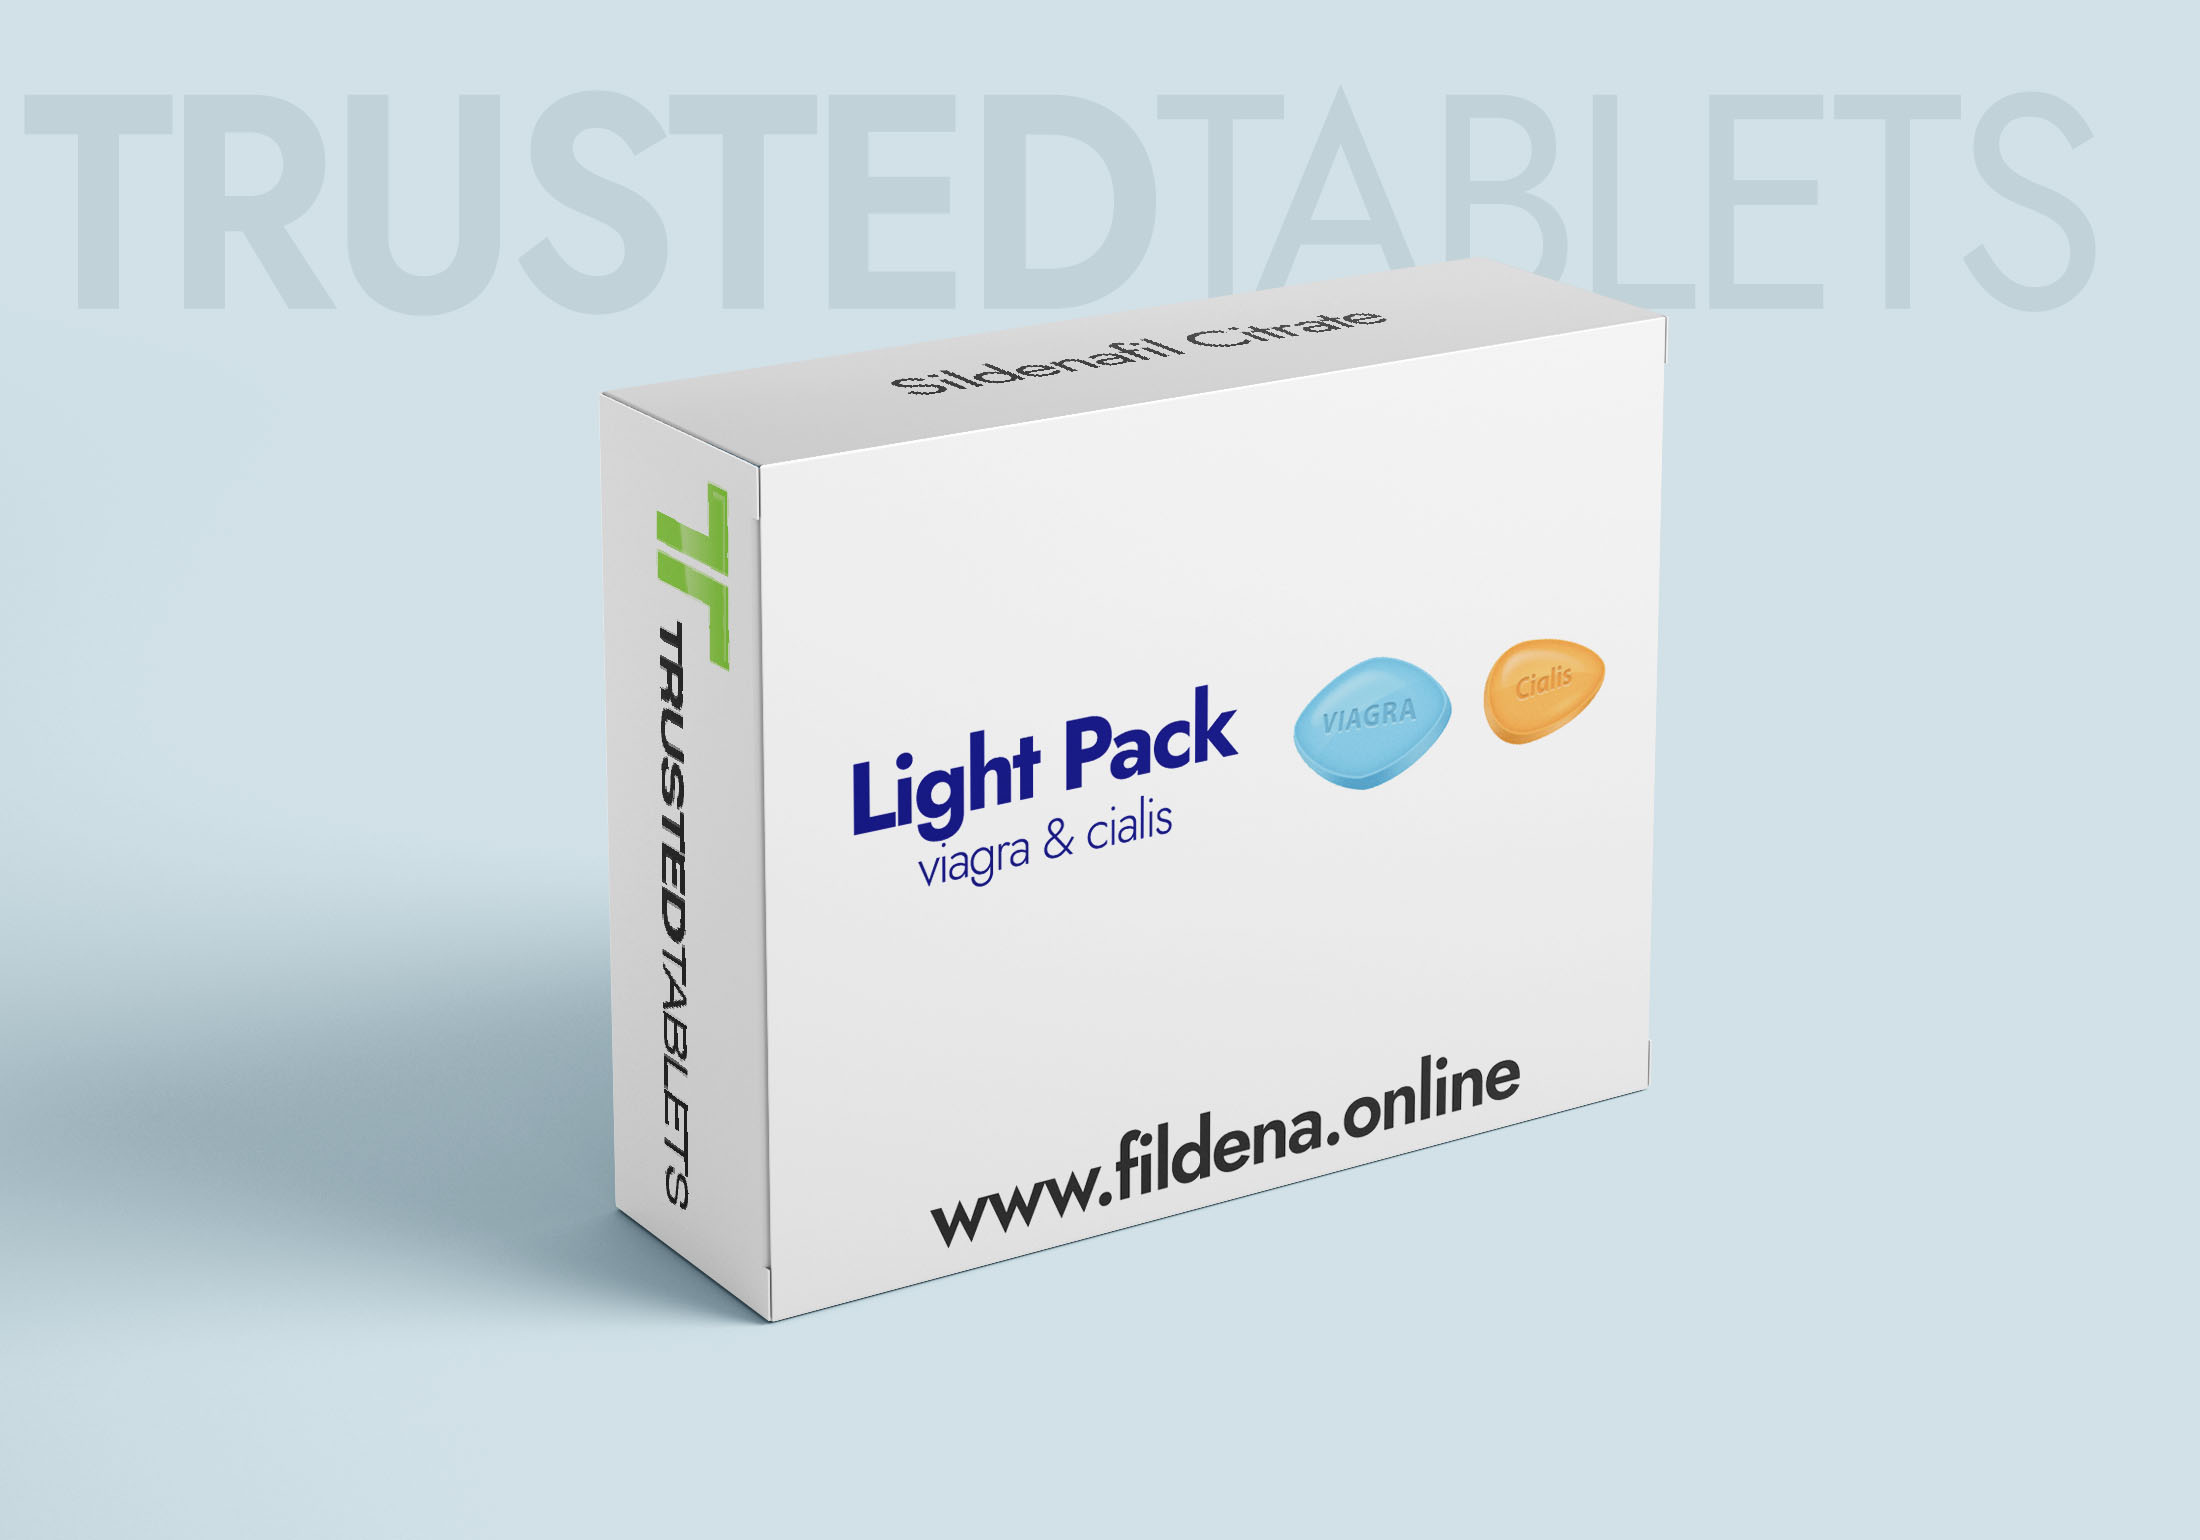 Light Pack TrustedTablets